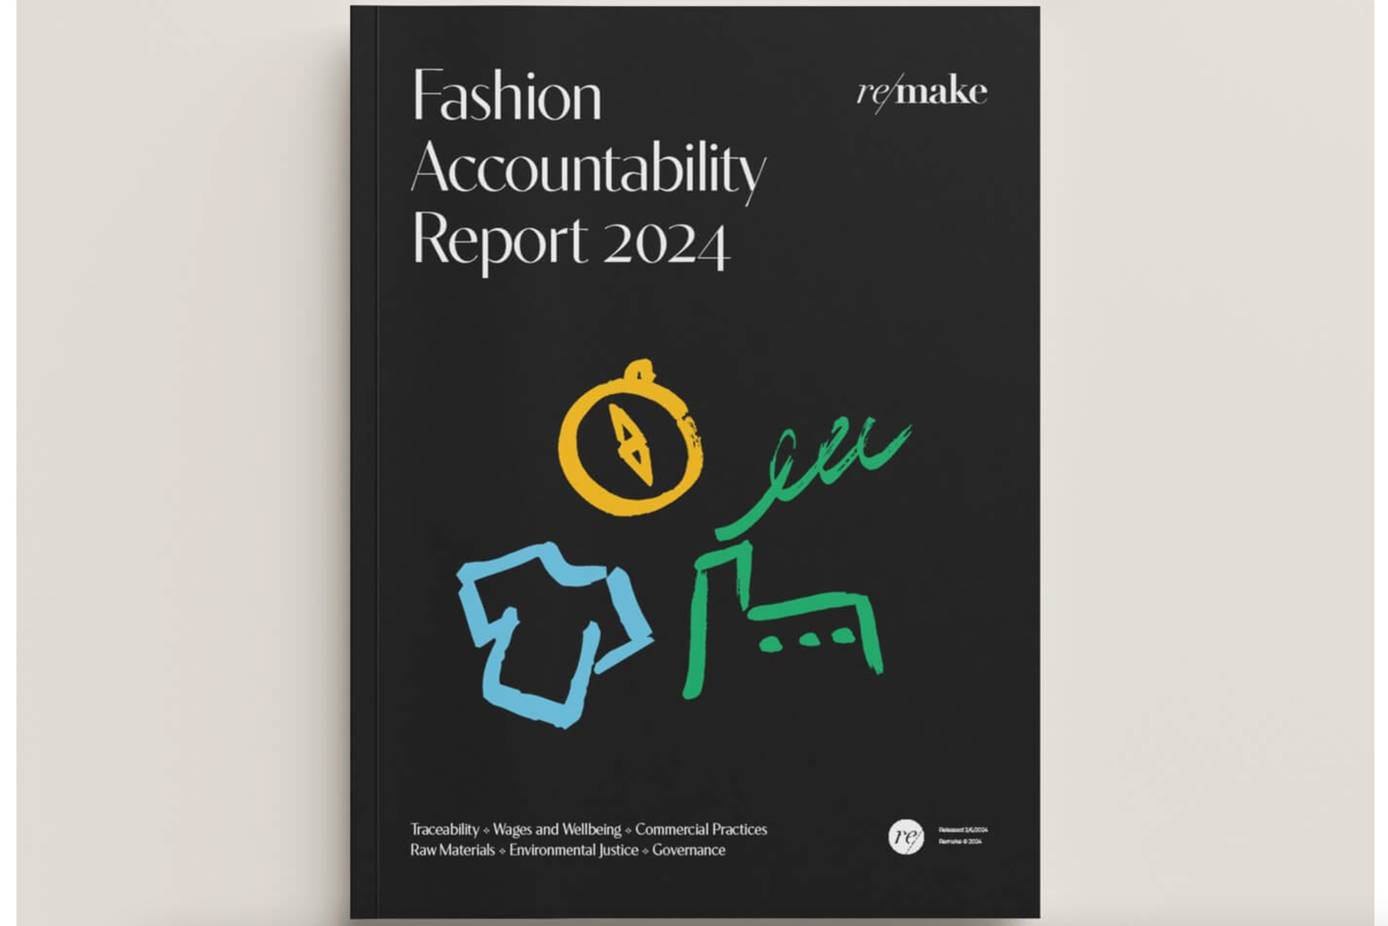 Skims Scores a Zero on Fashion Accountability Report